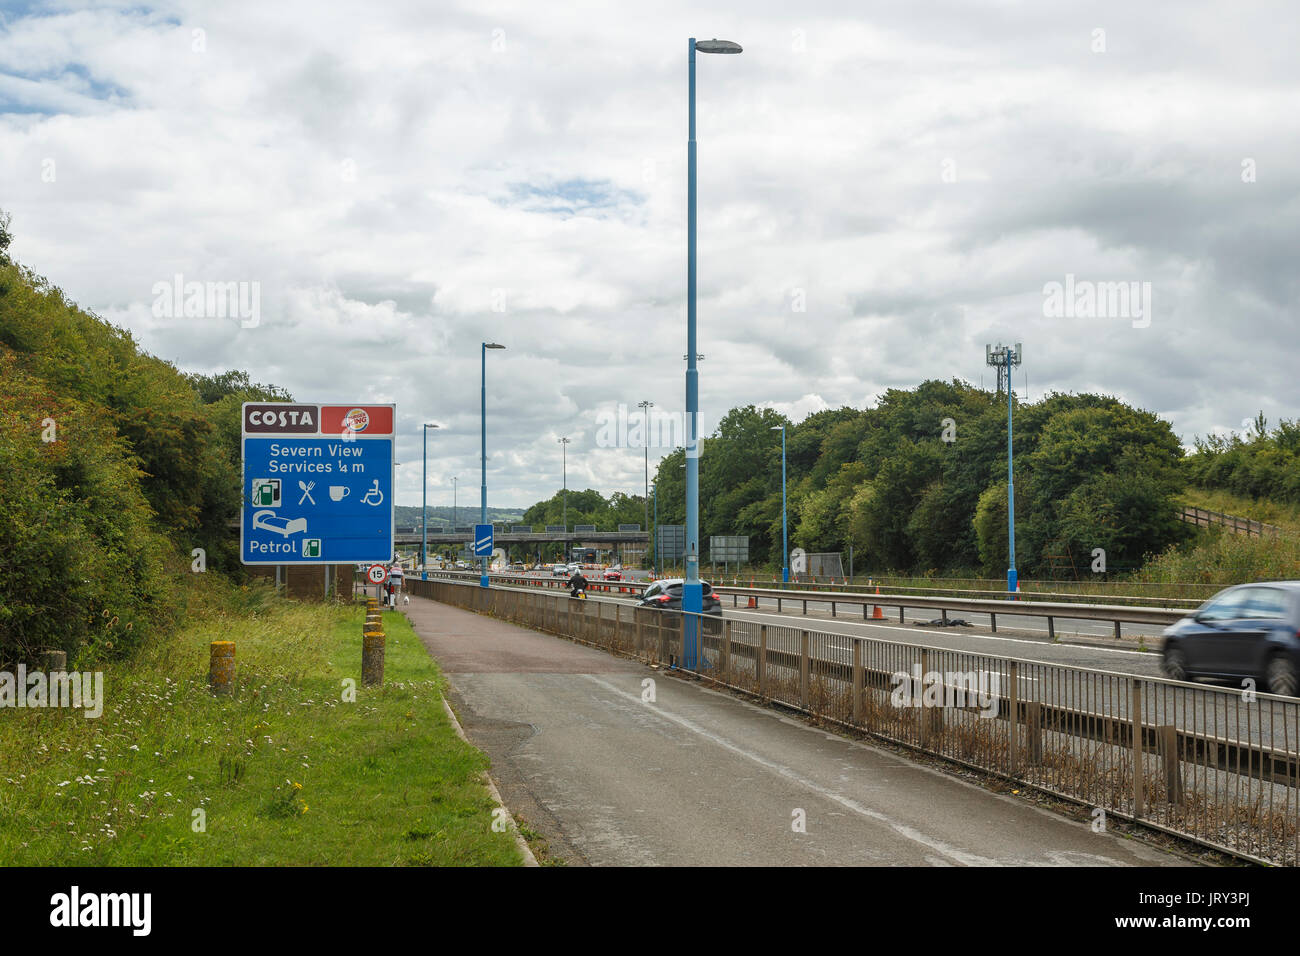 Wegweiser zu den Severn View Dienstleistungen auf Englisch Ende der Severn Bridge (M48). Moto, Costa Coffee. Stockfoto